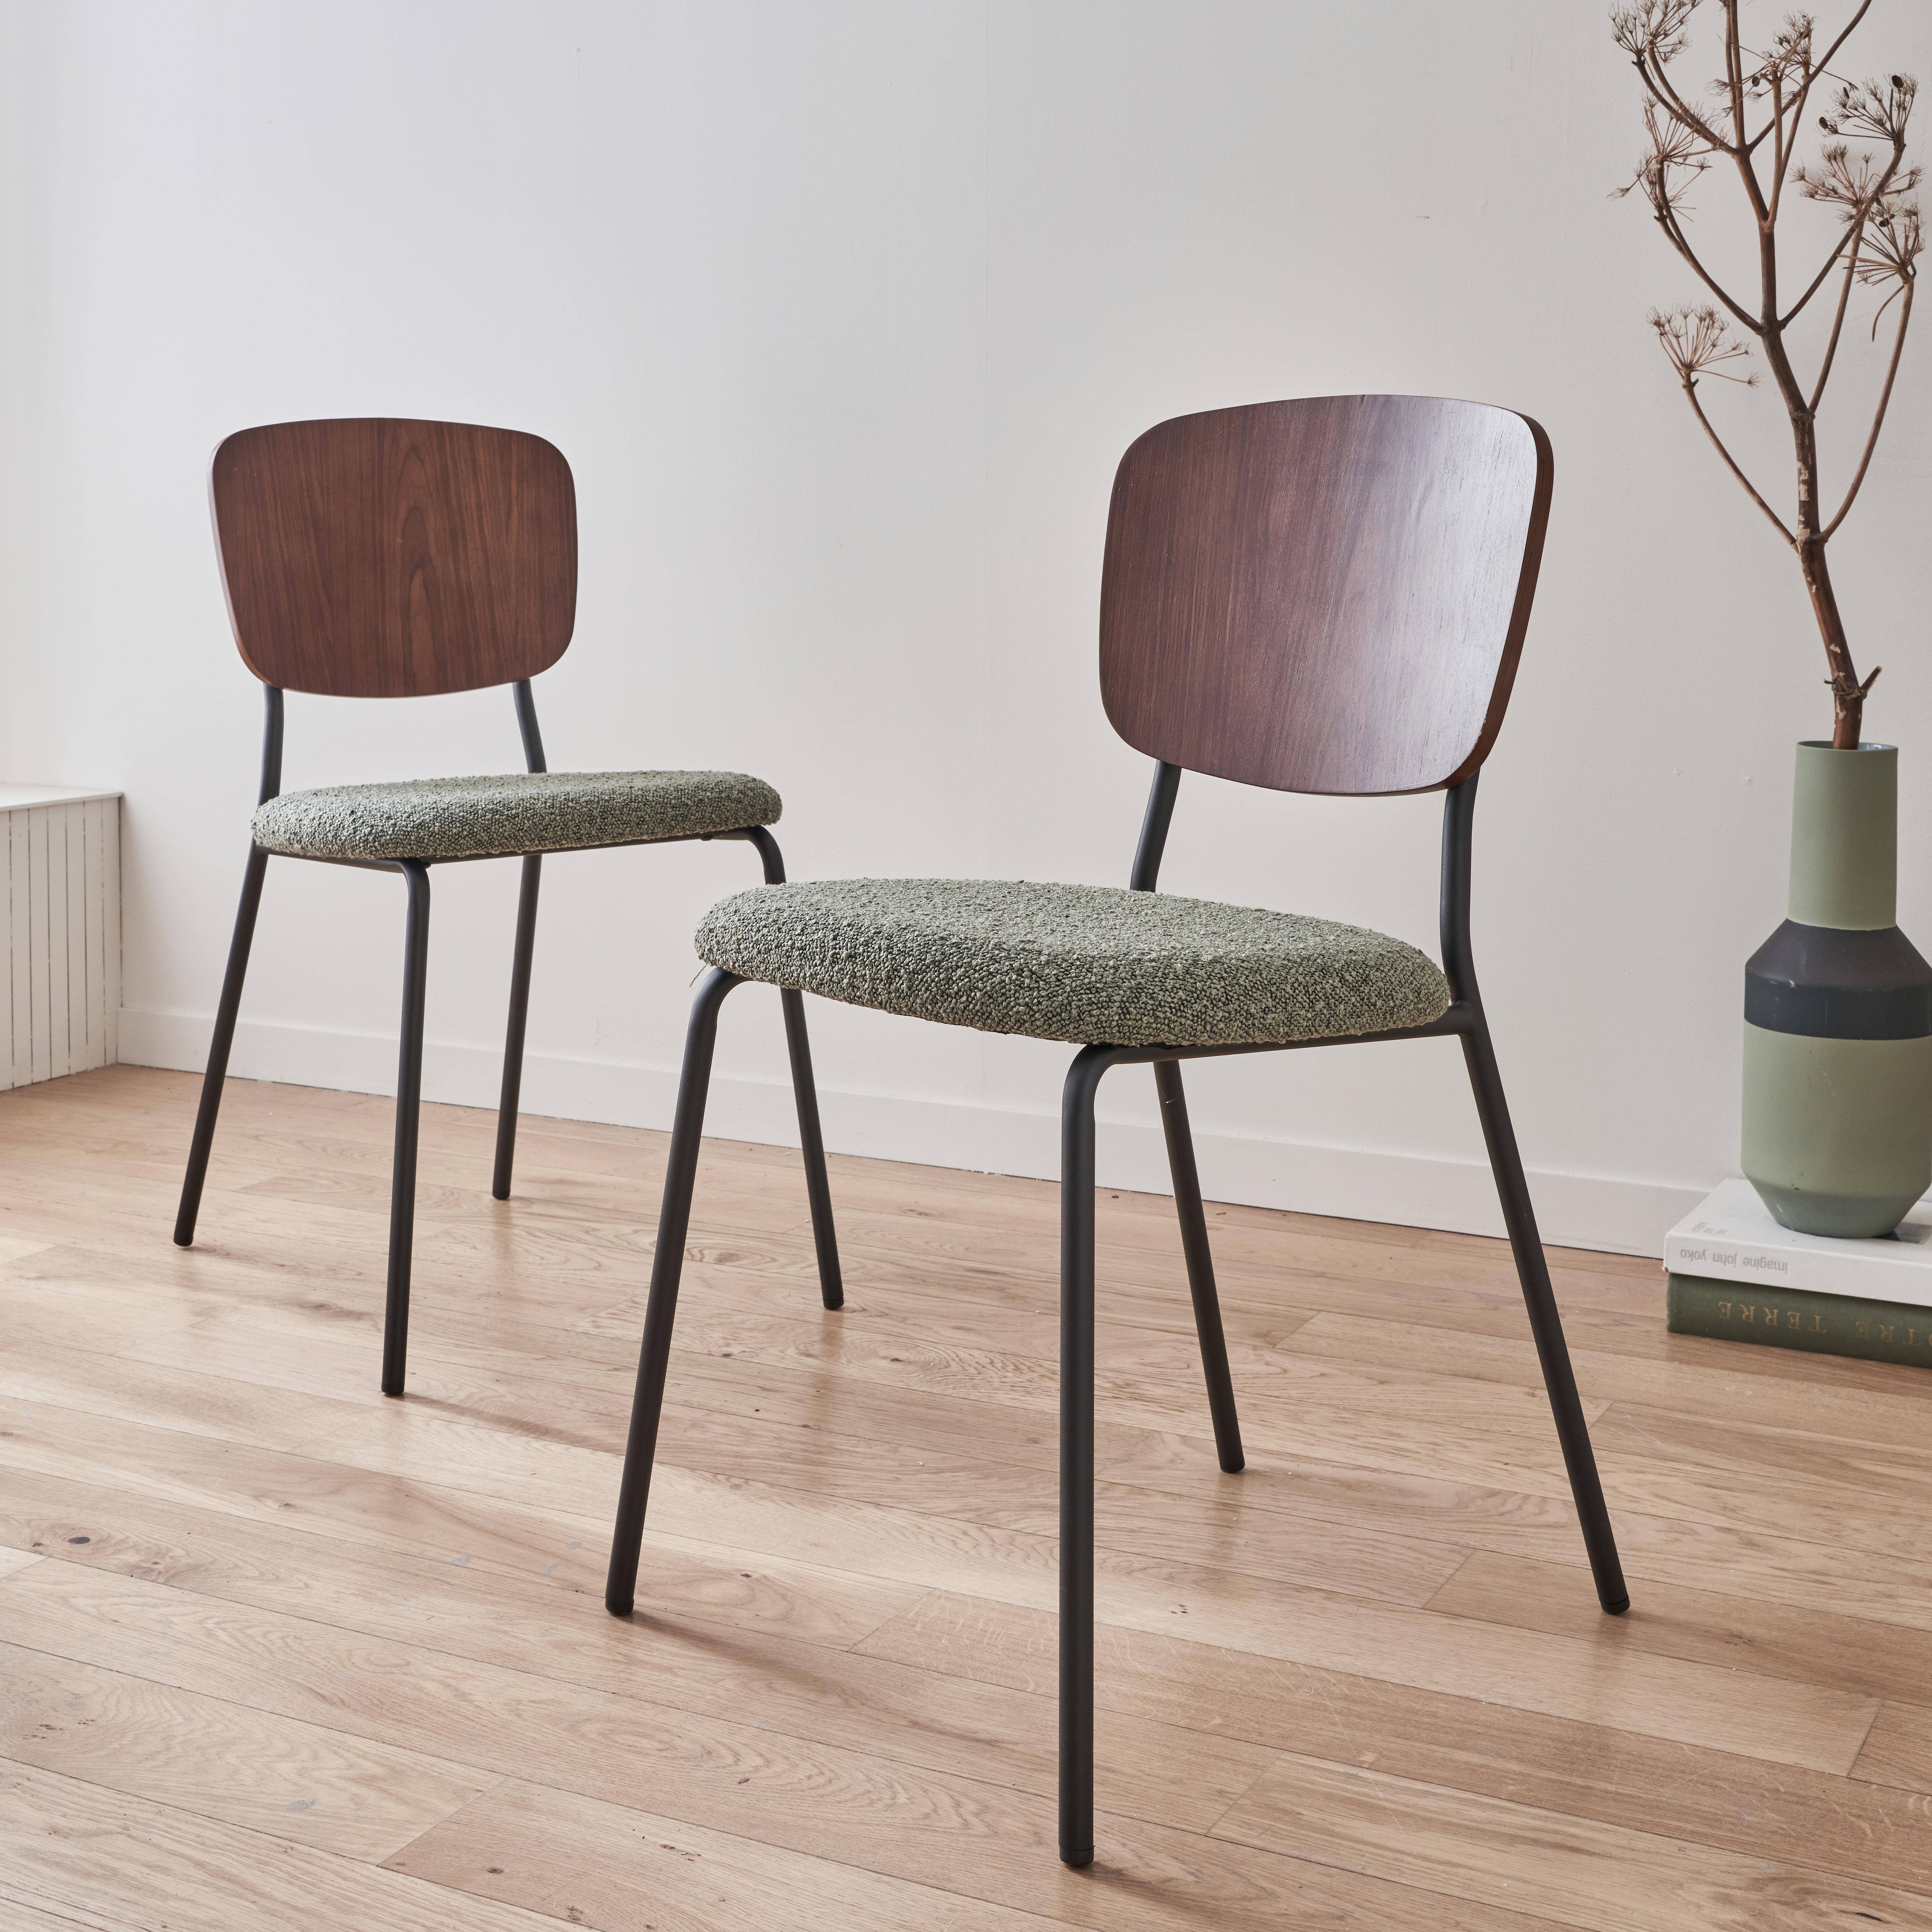 2er Set Stühle mit strukturiertem Bouclé-Sitz in grün, Rückenlehne aus gebogenem Pappelholz, Beine aus mattschwarzem Metall Photo1